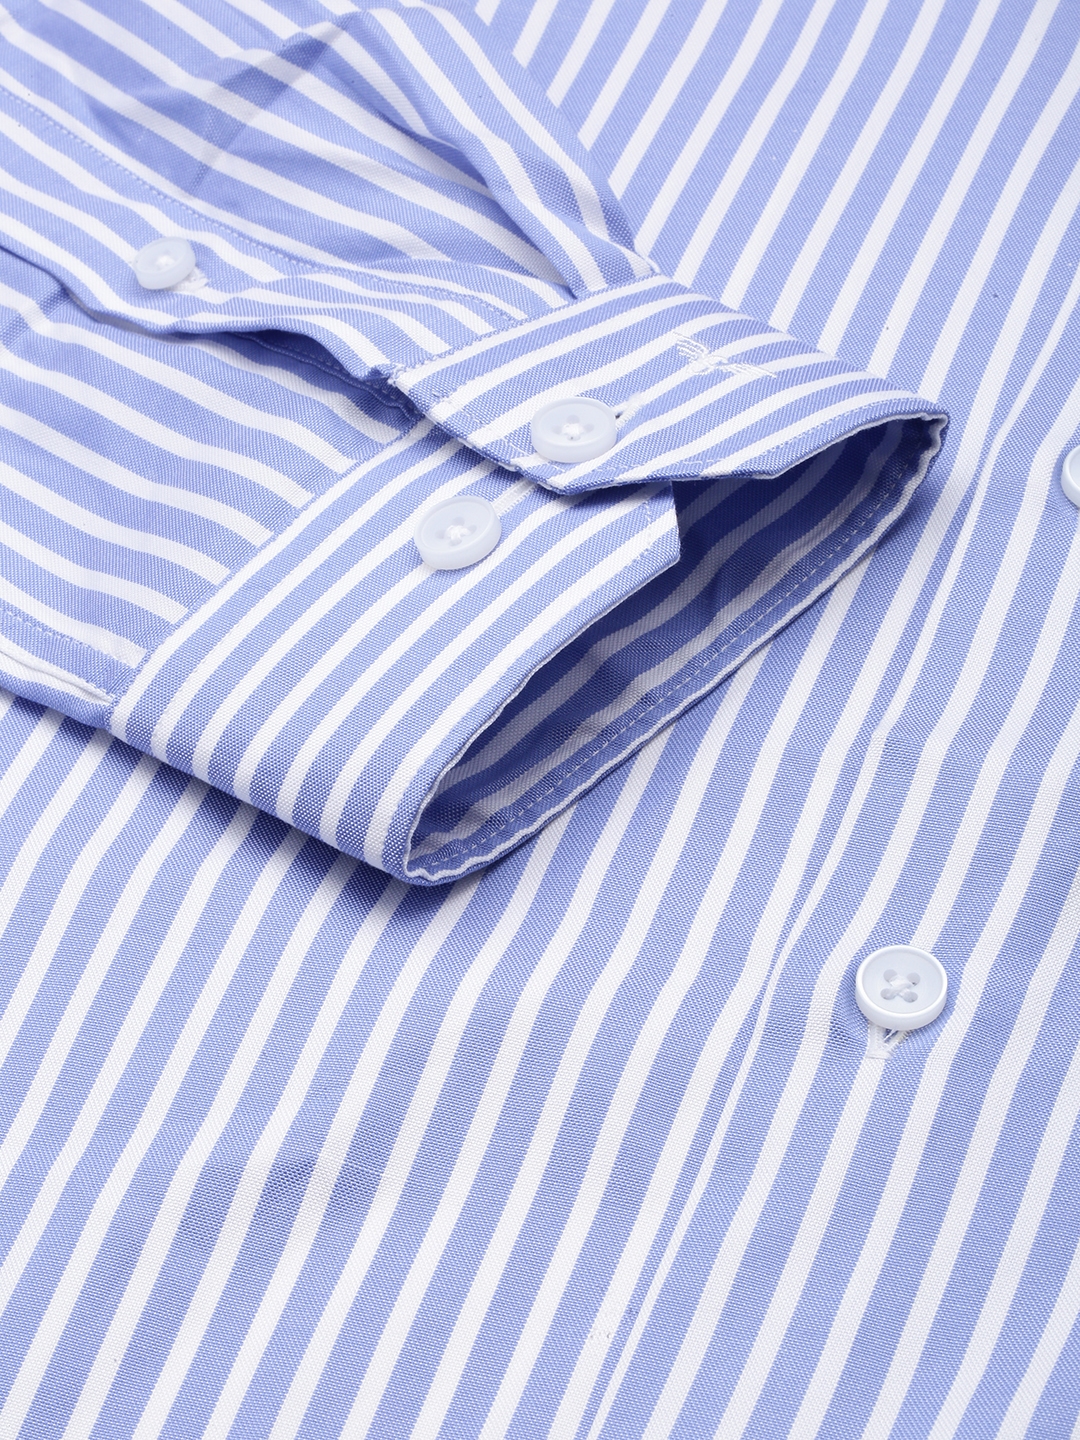 Showoff | SHOWOFF Men's Spread Collar Self Design Blue Smart Shirt 6